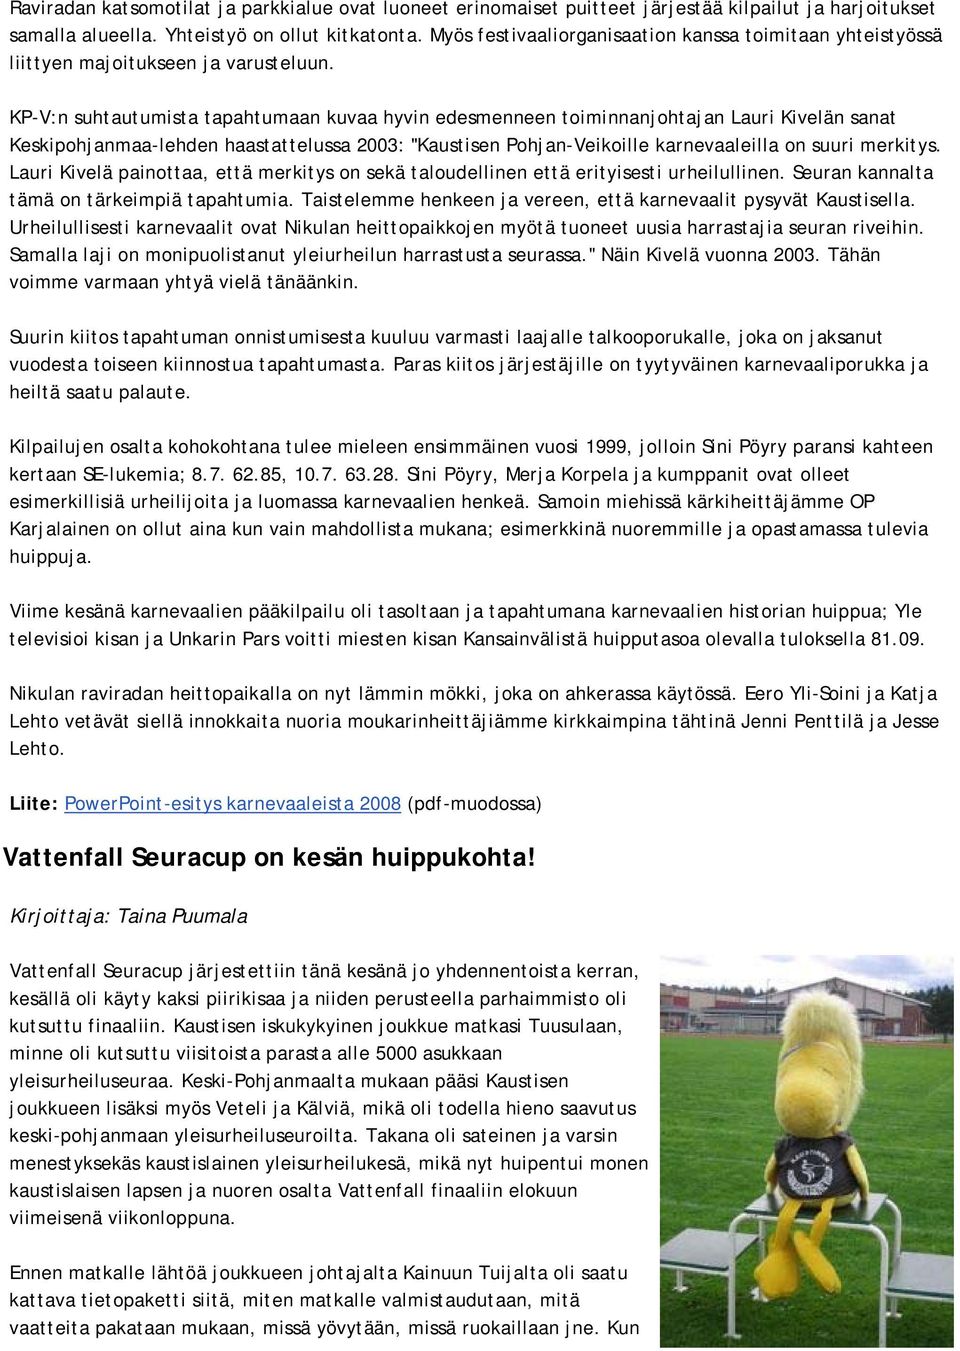 KP-V:n suhtautumista tapahtumaan kuvaa hyvin edesmenneen toiminnanjohtajan Lauri Kivelän sanat Keskipohjanmaa-lehden haastattelussa 2003: "Kaustisen Pohjan-Veikoille karnevaaleilla on suuri merkitys.